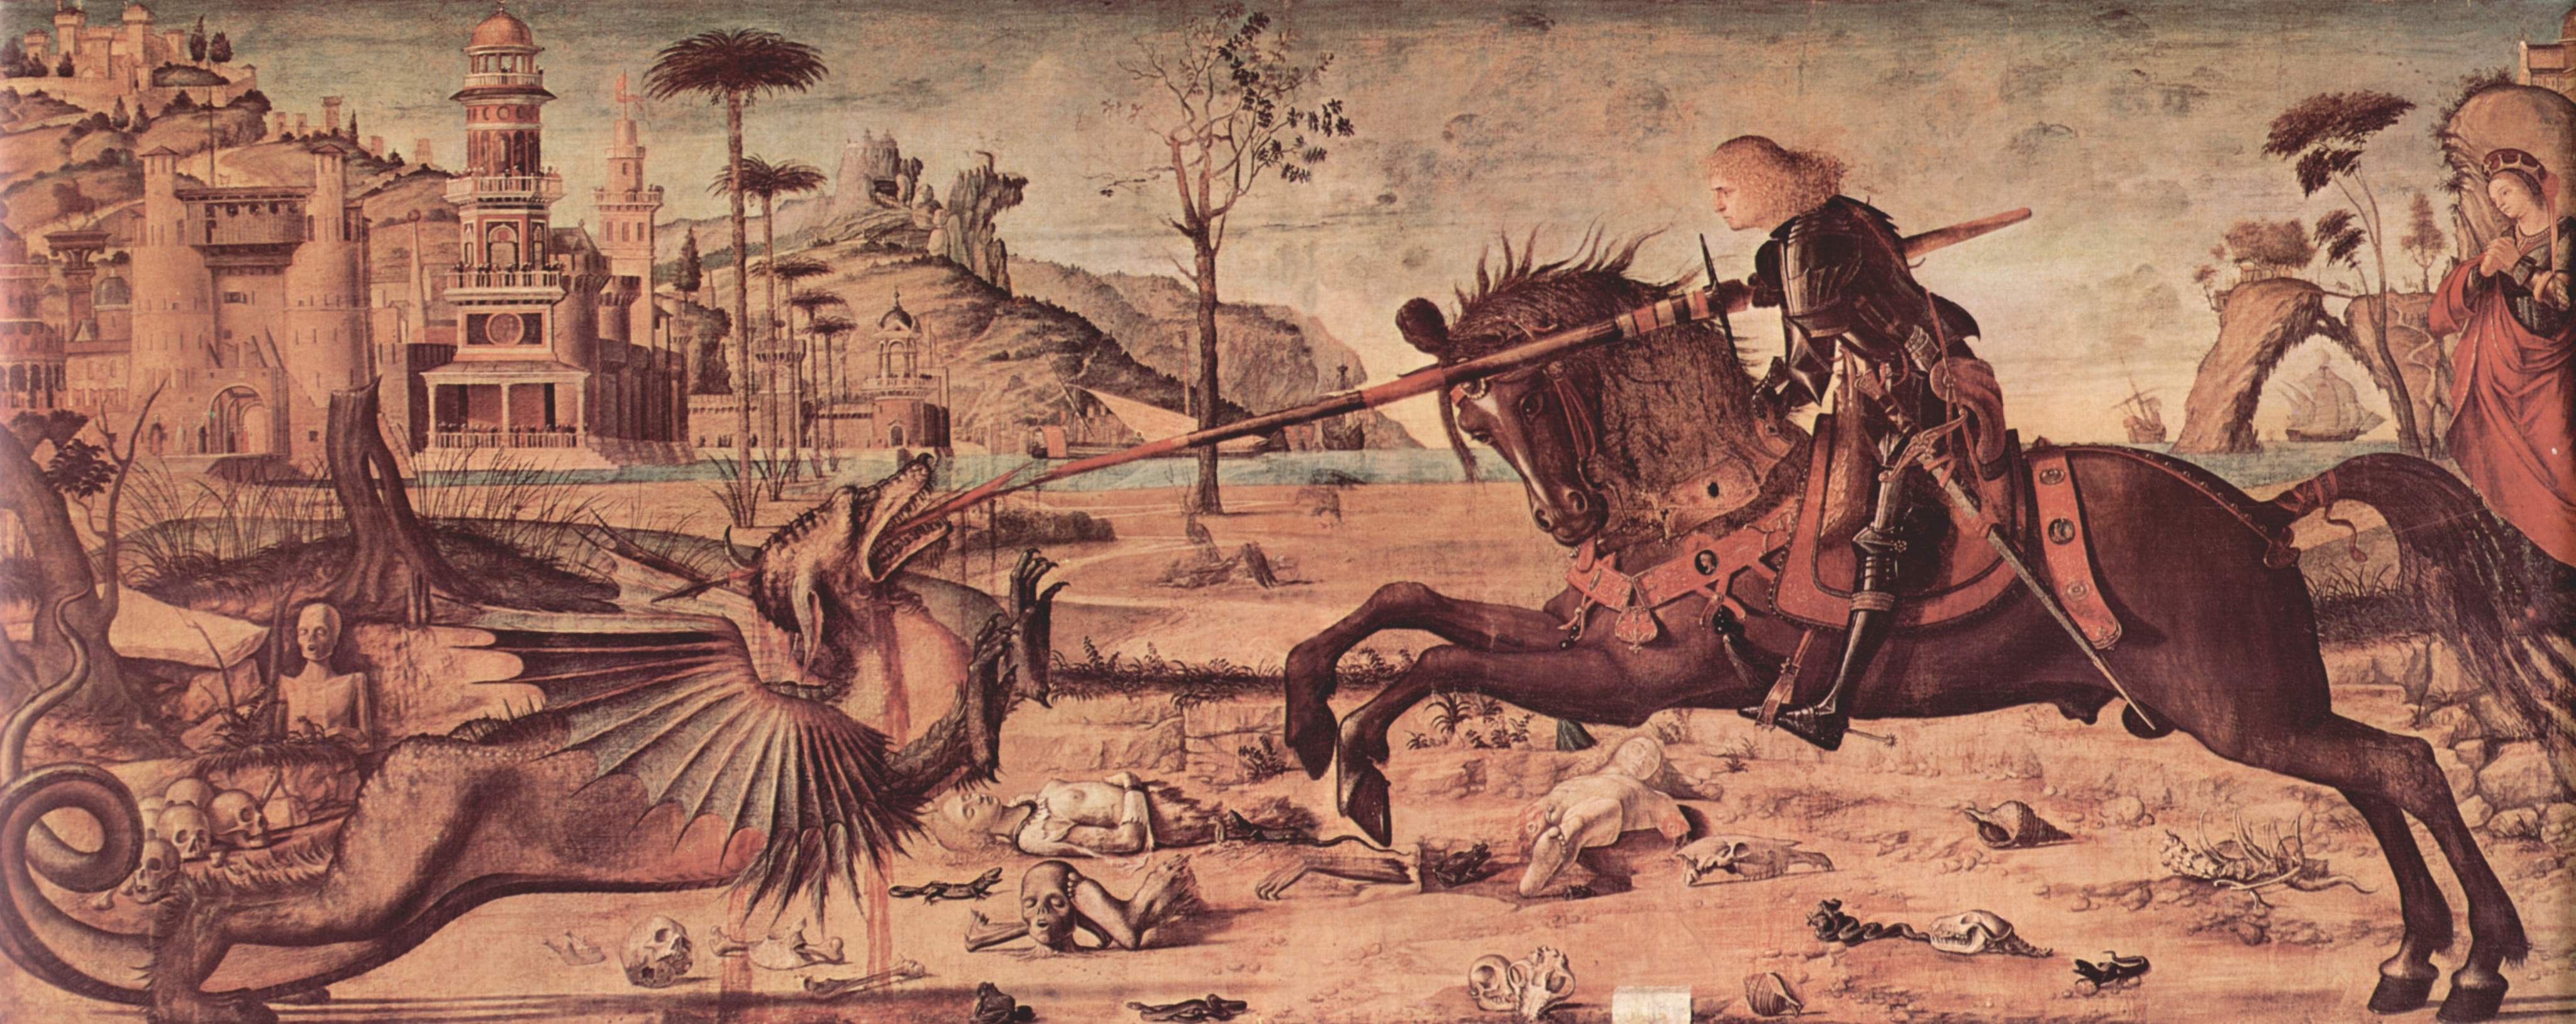 Der heilige Georg und der Drache by Vittore Carpaccio - 1502 - 141 x 360 cm Scuola di San Giorgio degli Schiavoni